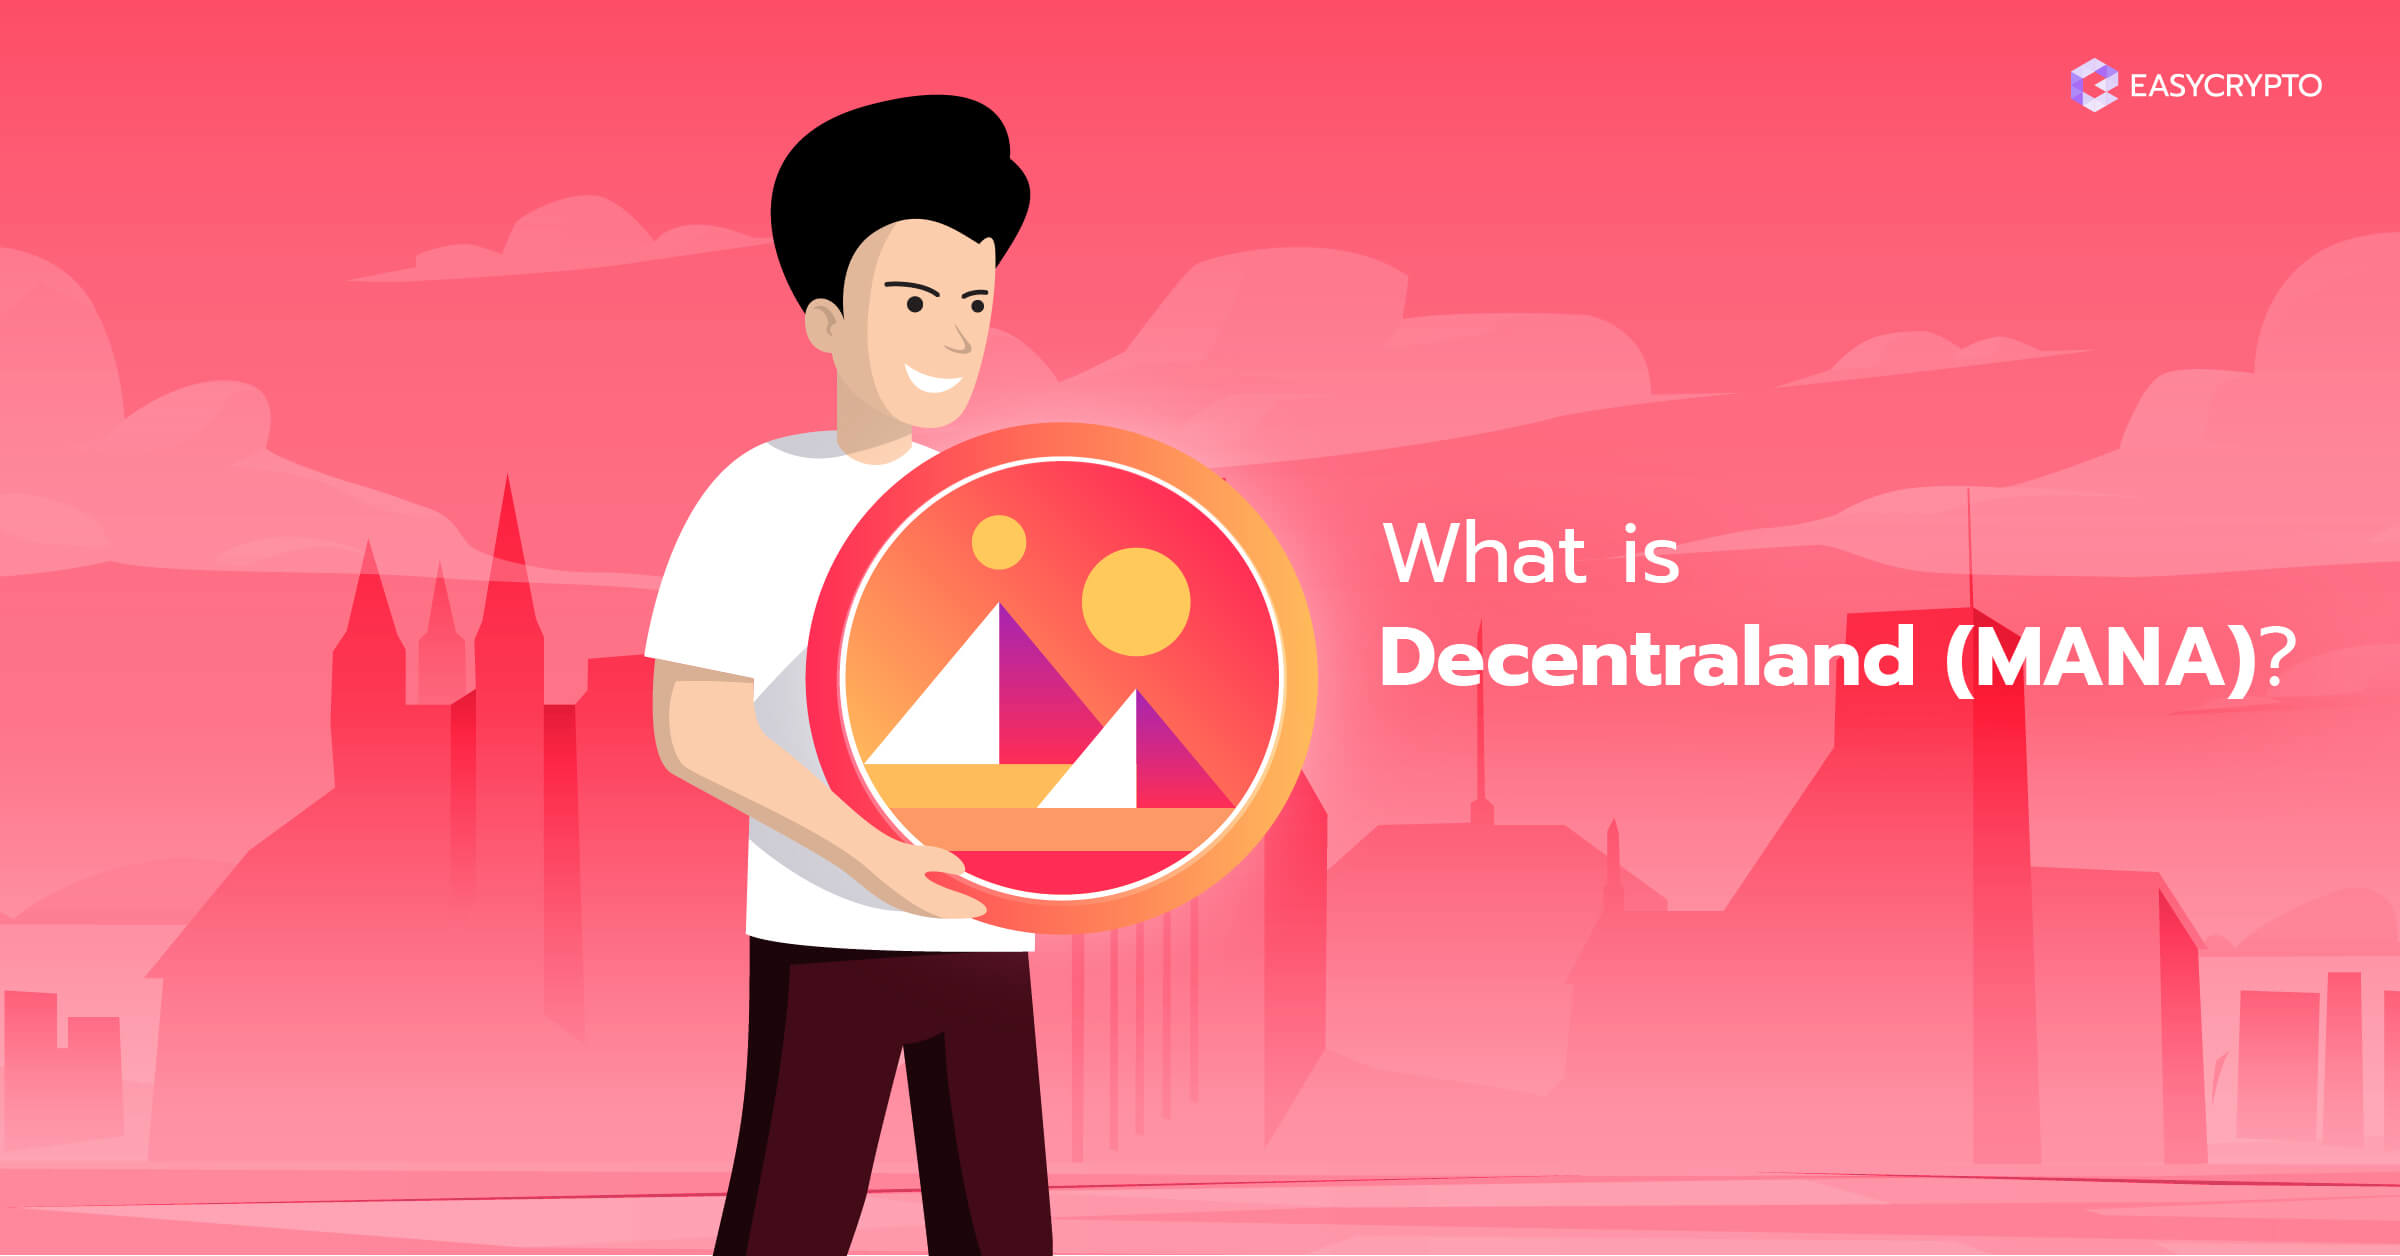 ارز دیجیتال دیسنترالند (Decentraland) - MANA چیست؟